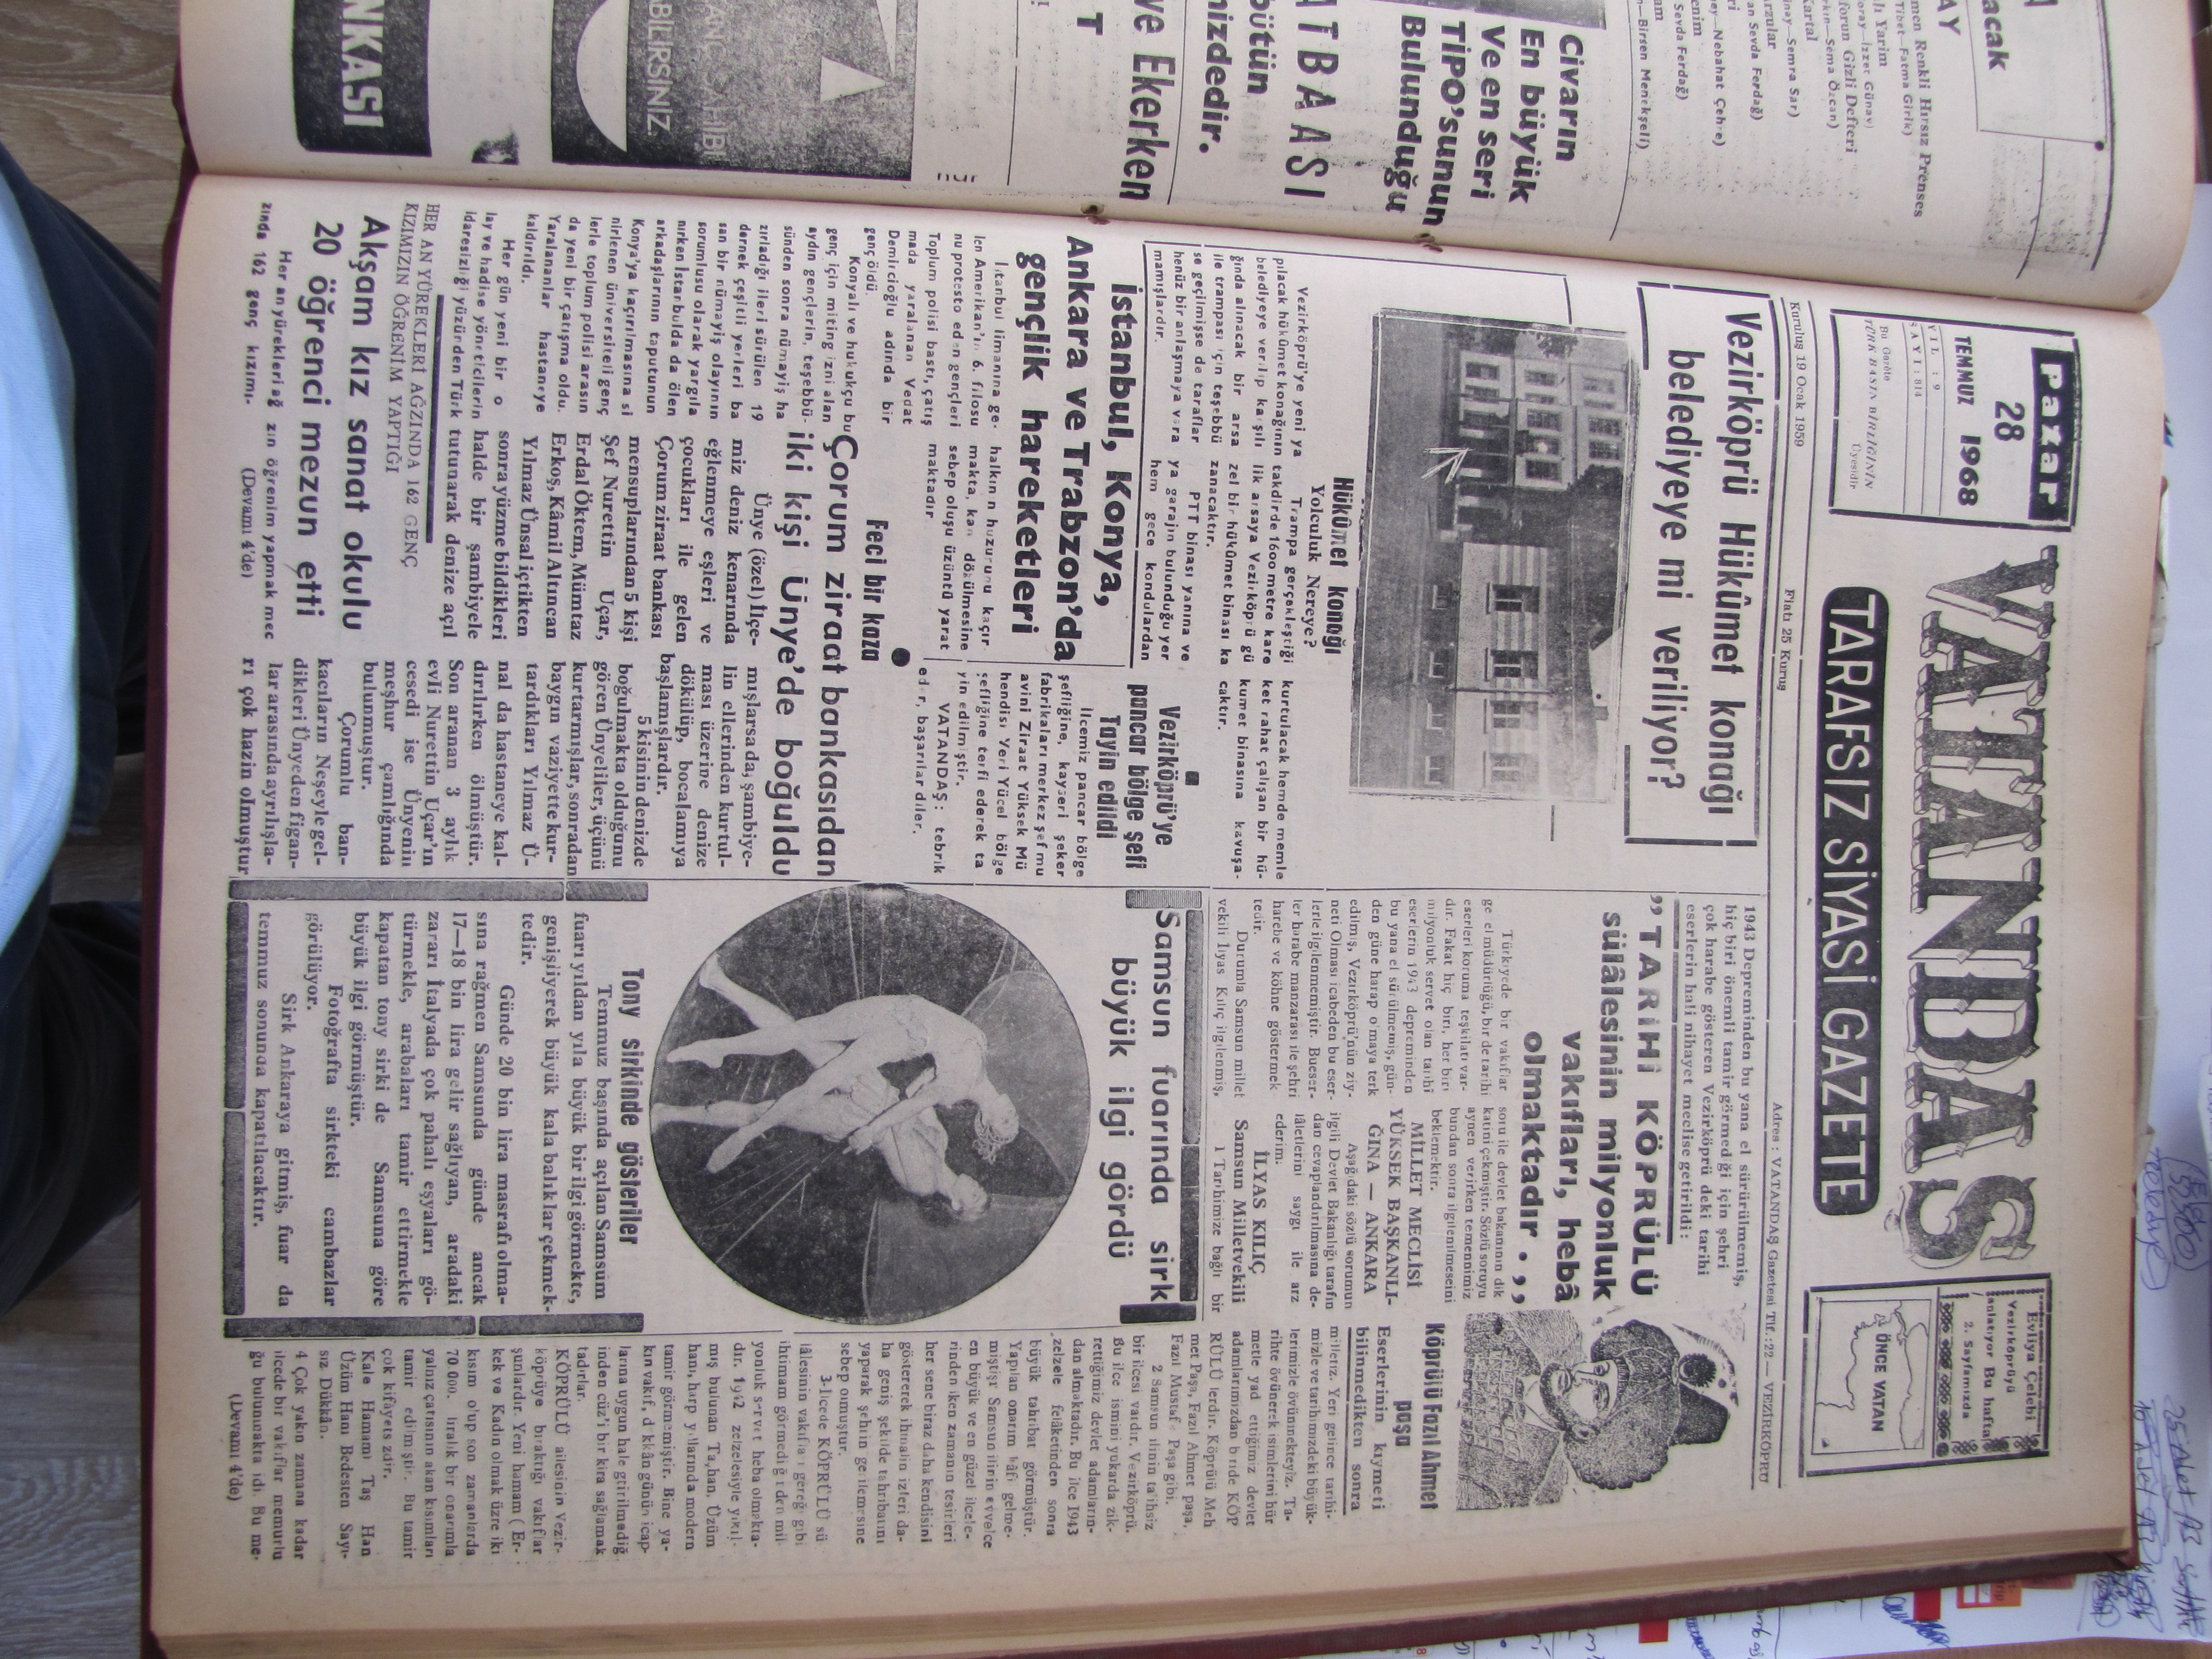 Vezirköprü Hükümet Konağı Belediyeye mi veriliyor? 28 Temmuz 1968 Pazar